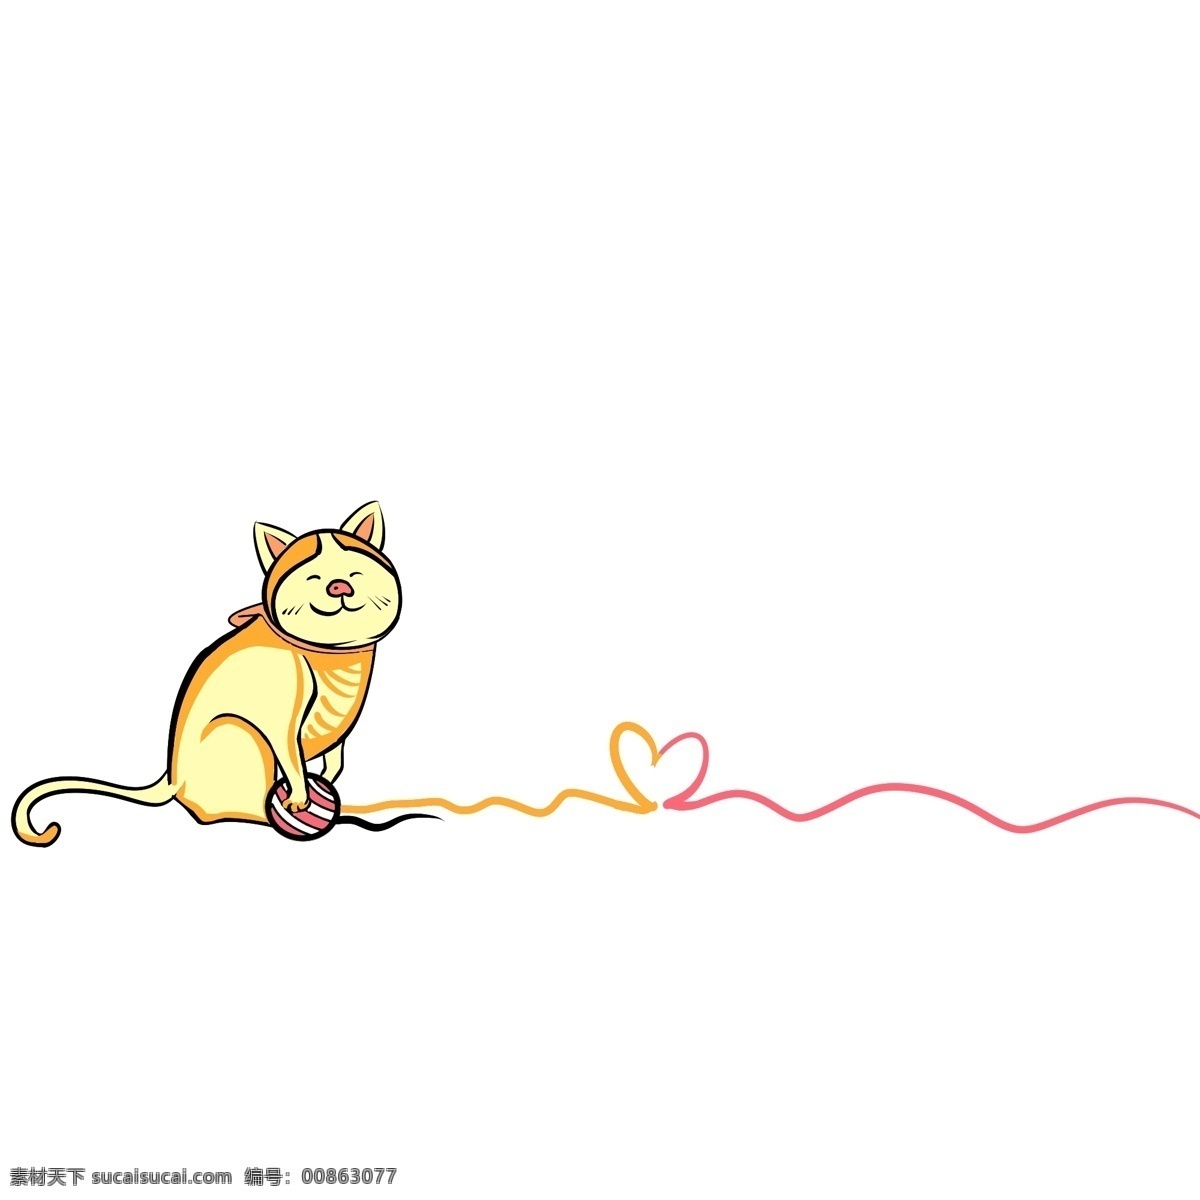 黄色 猫咪 分割线 插画 黄色的分割线 爱心分割线 线条分割线 动物分割线 手绘分割线 卡通分割线